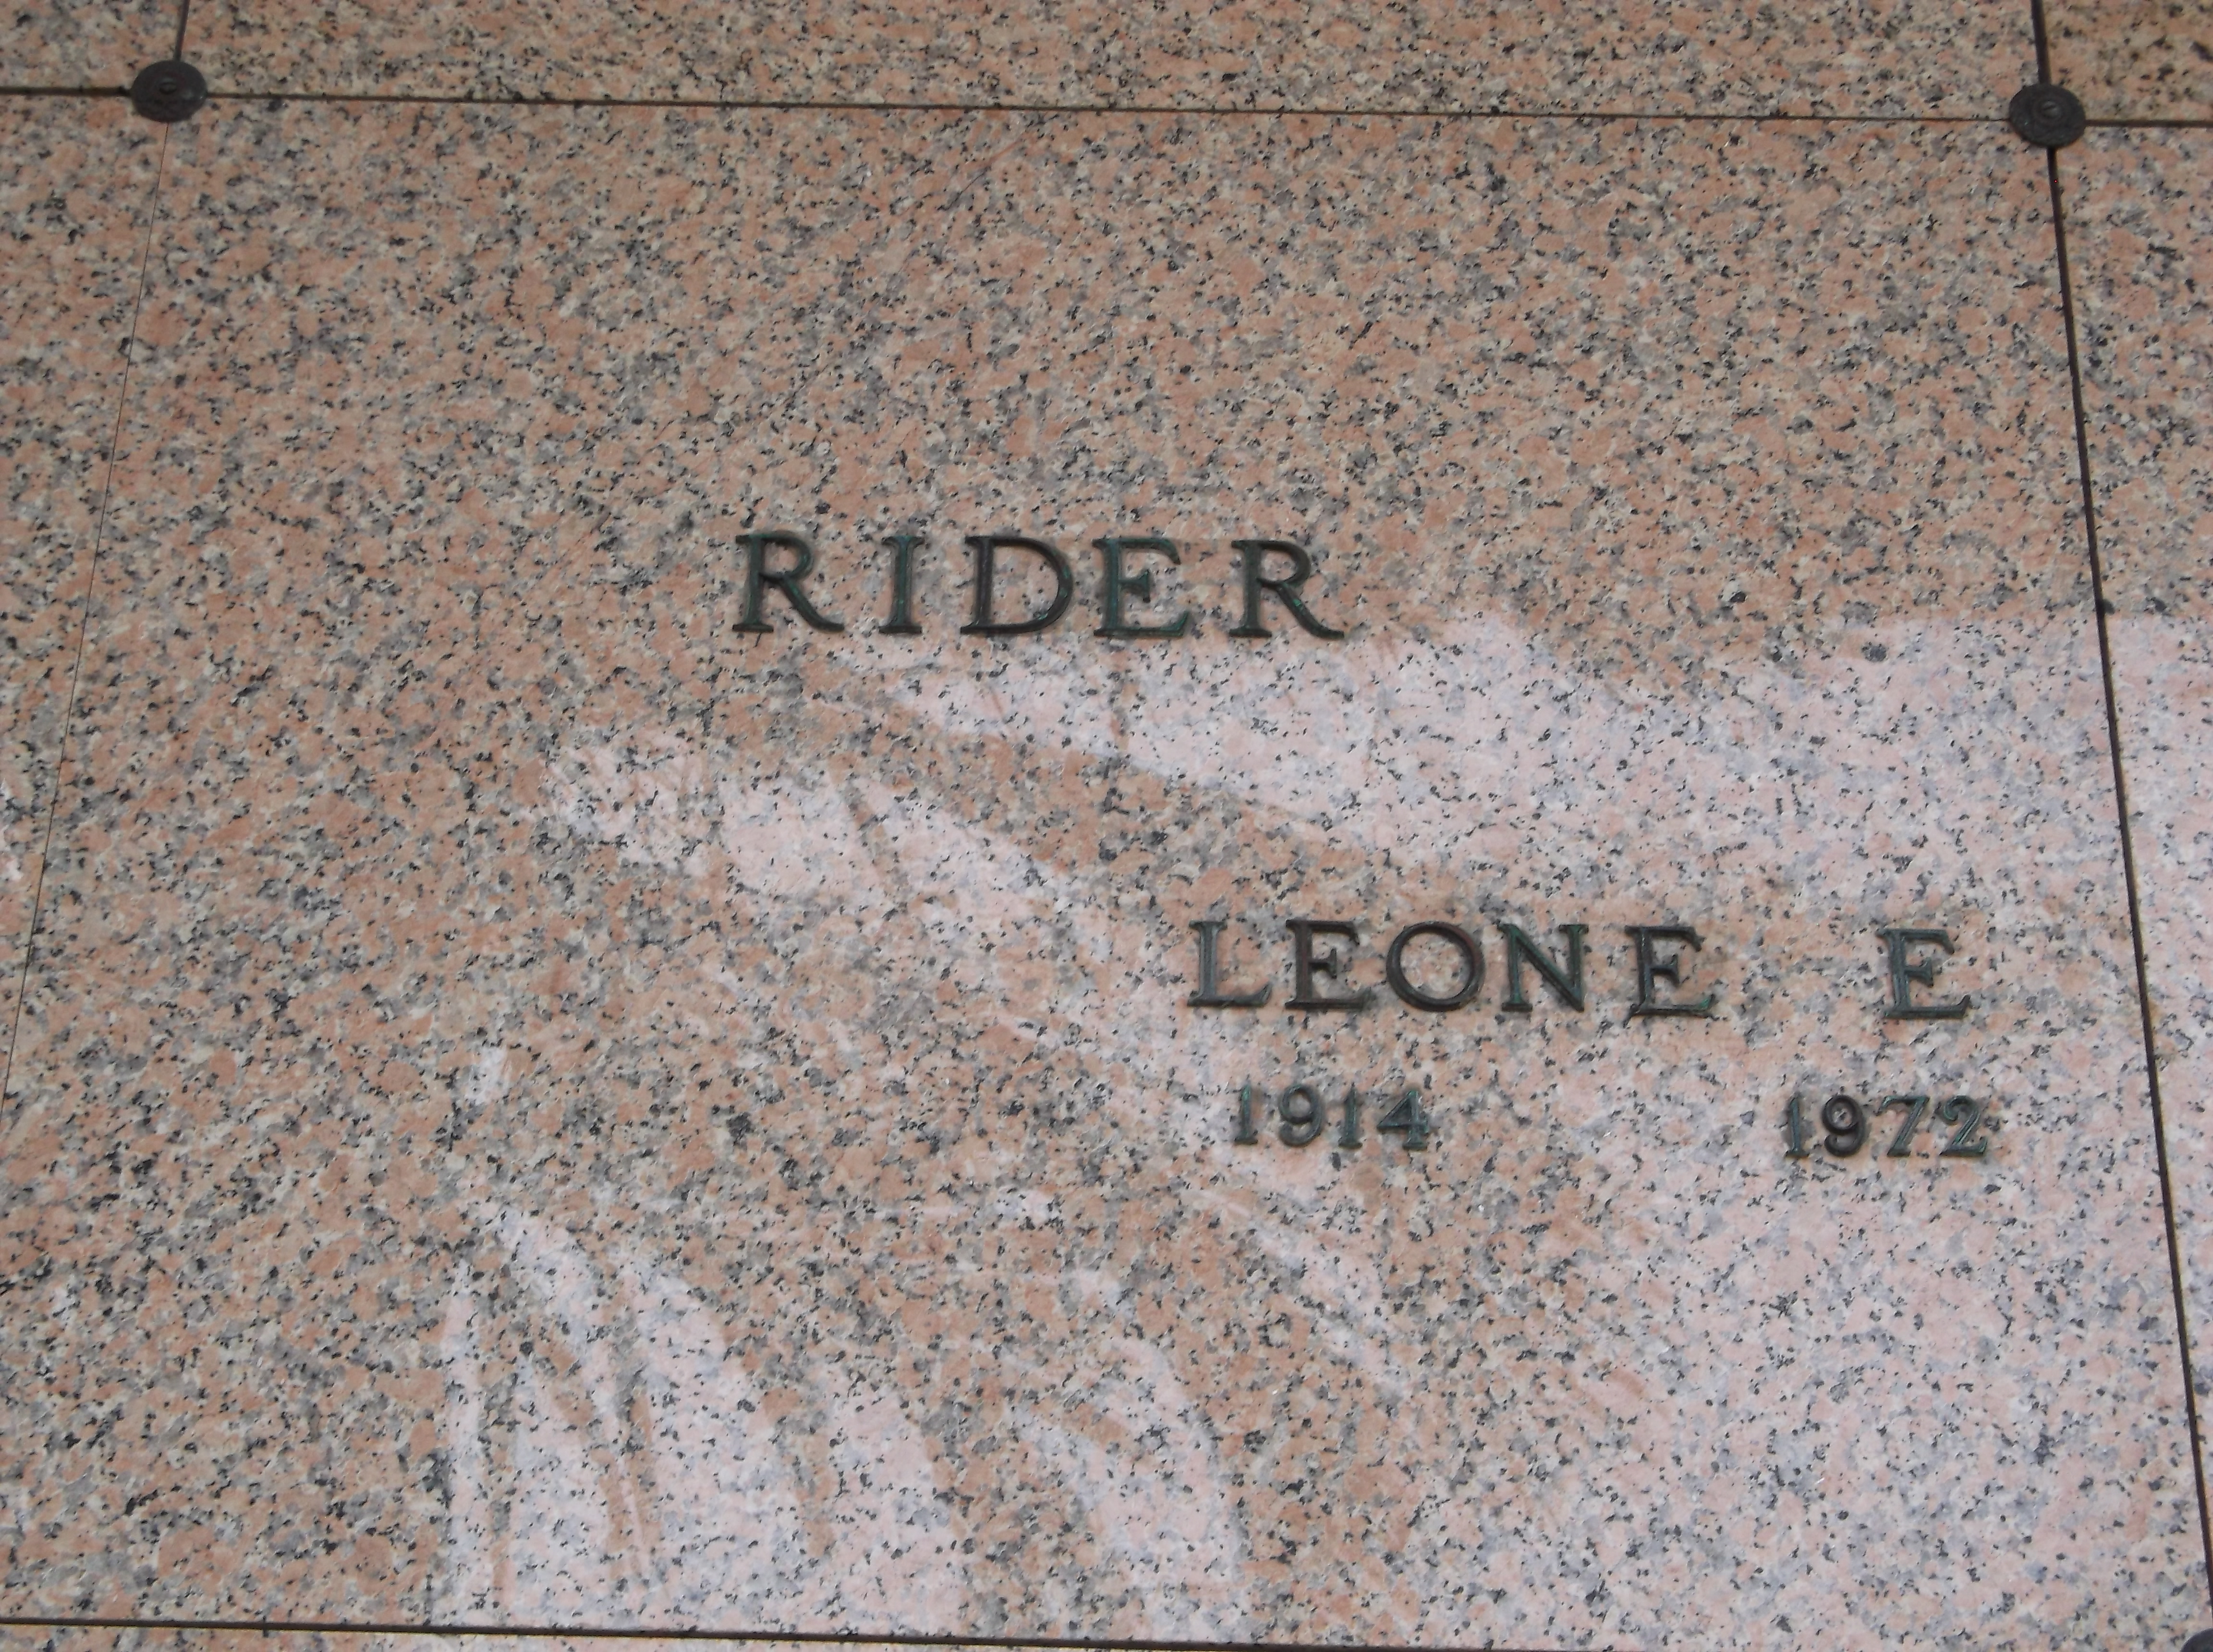 Leone E Rider